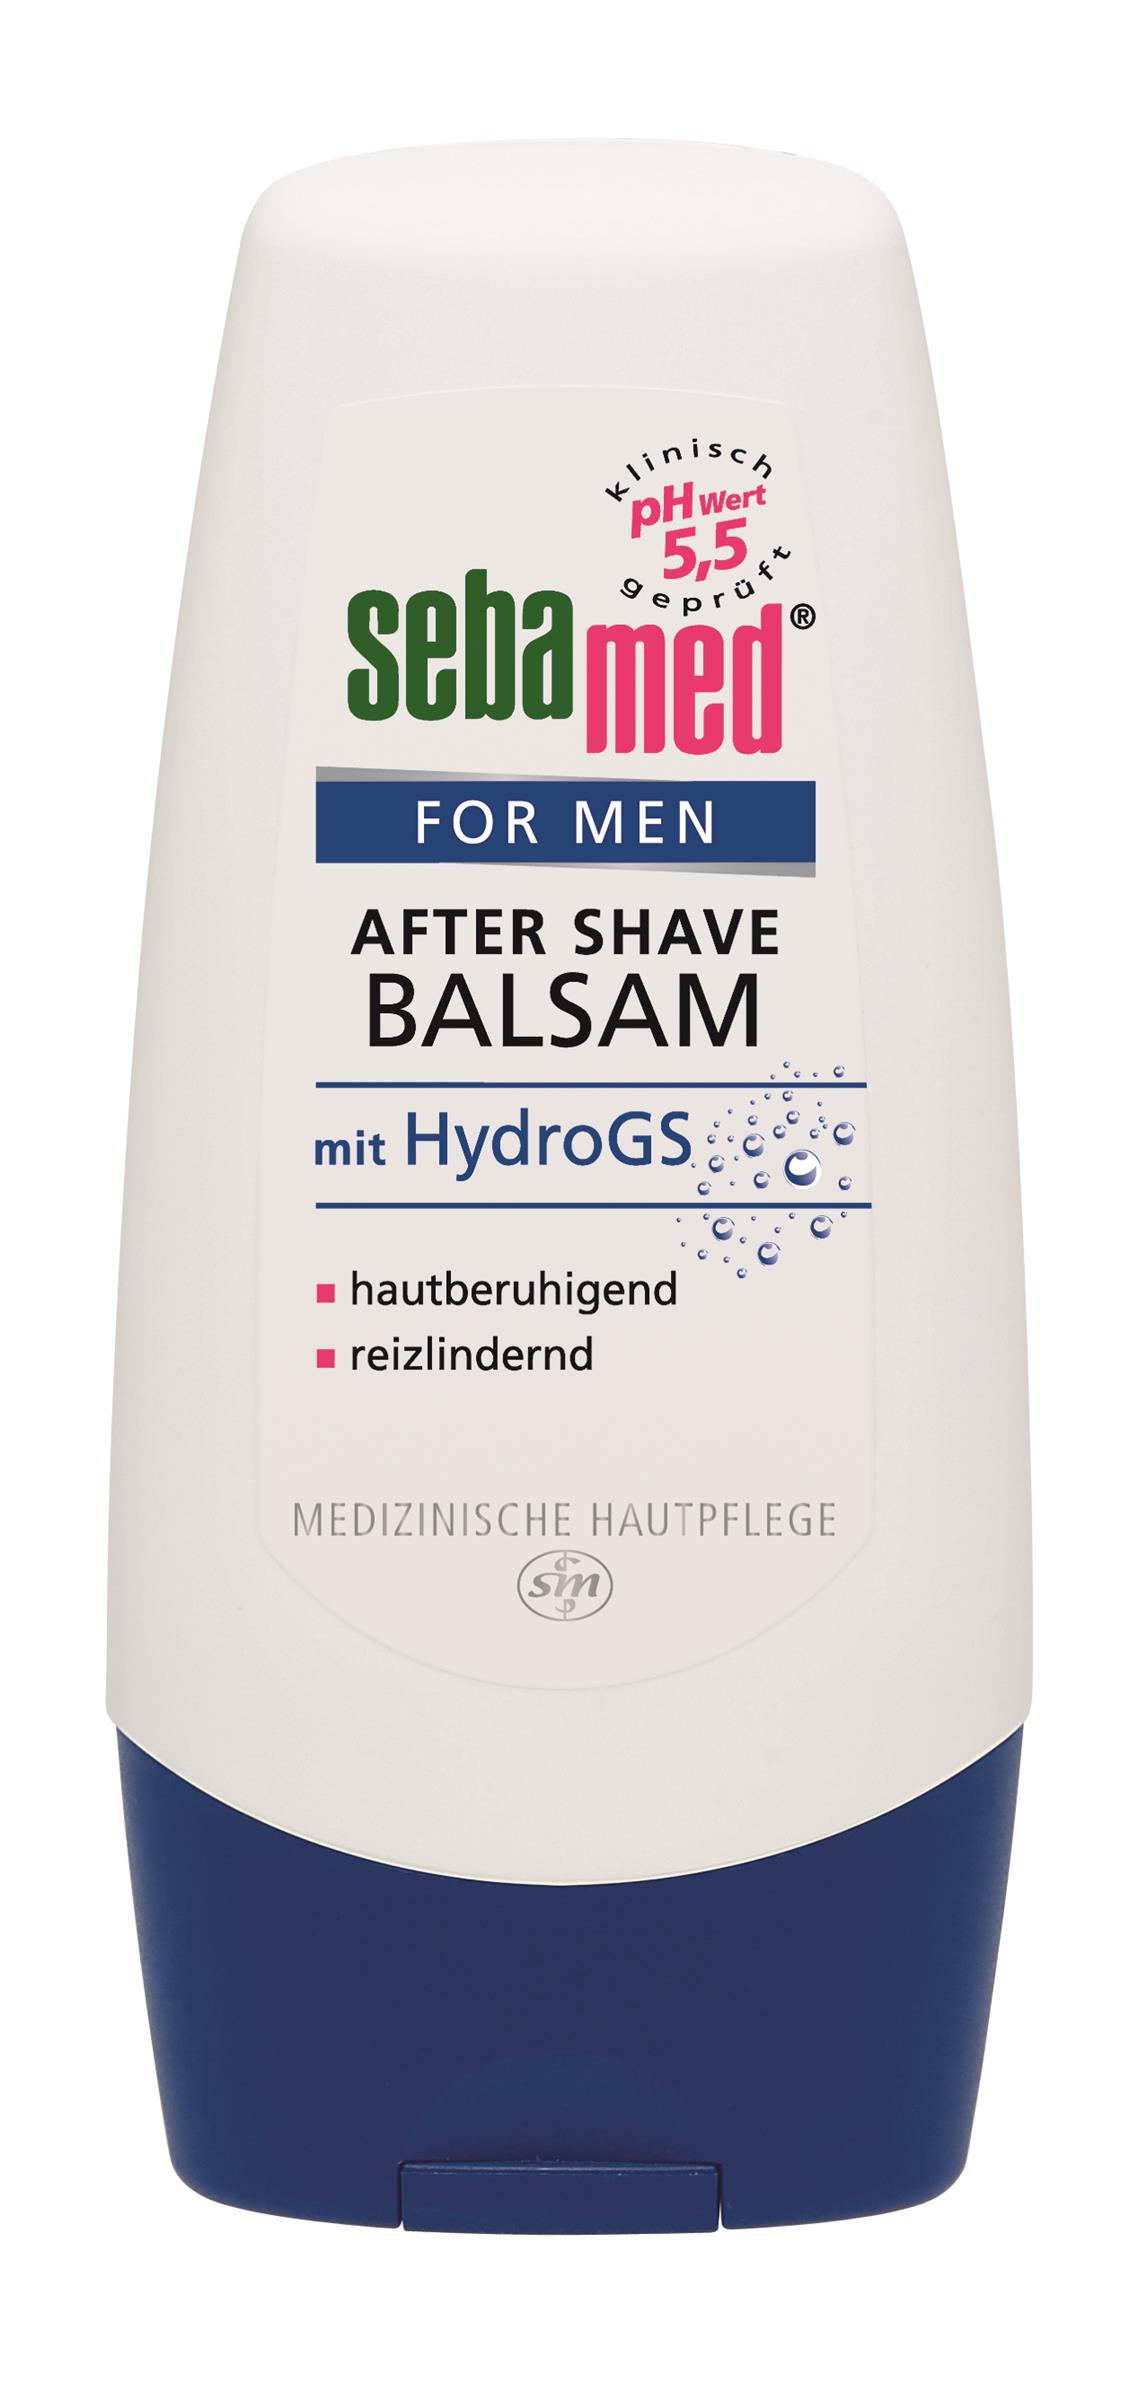 sebamed For Men After Shave Balsam